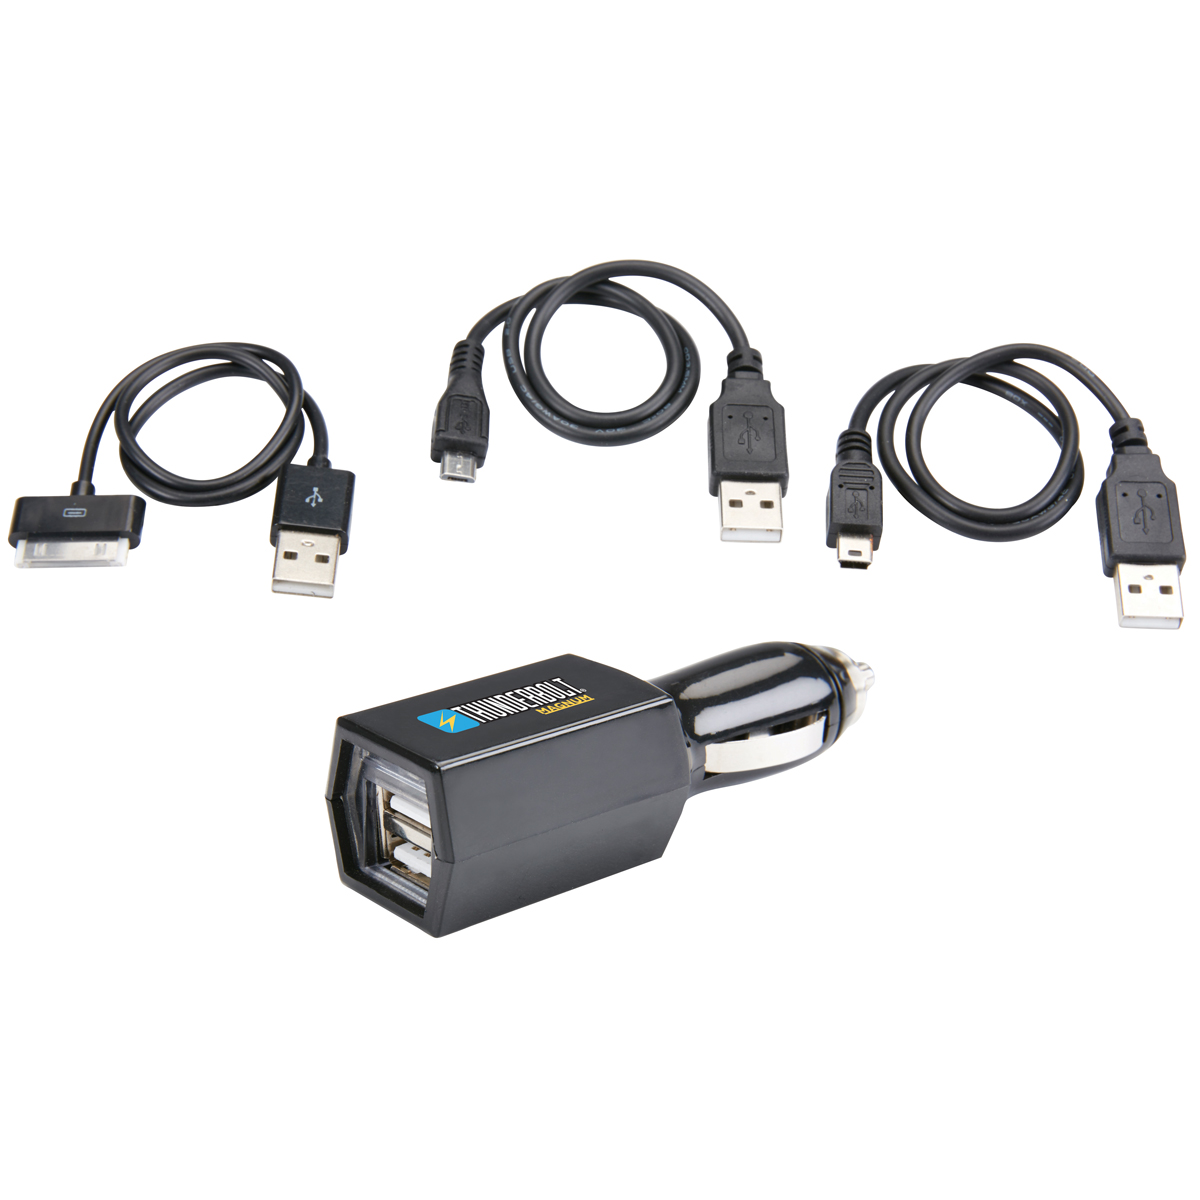 THUNDERBOLT Universal USB Car Adapter - Item 63011 / 61546